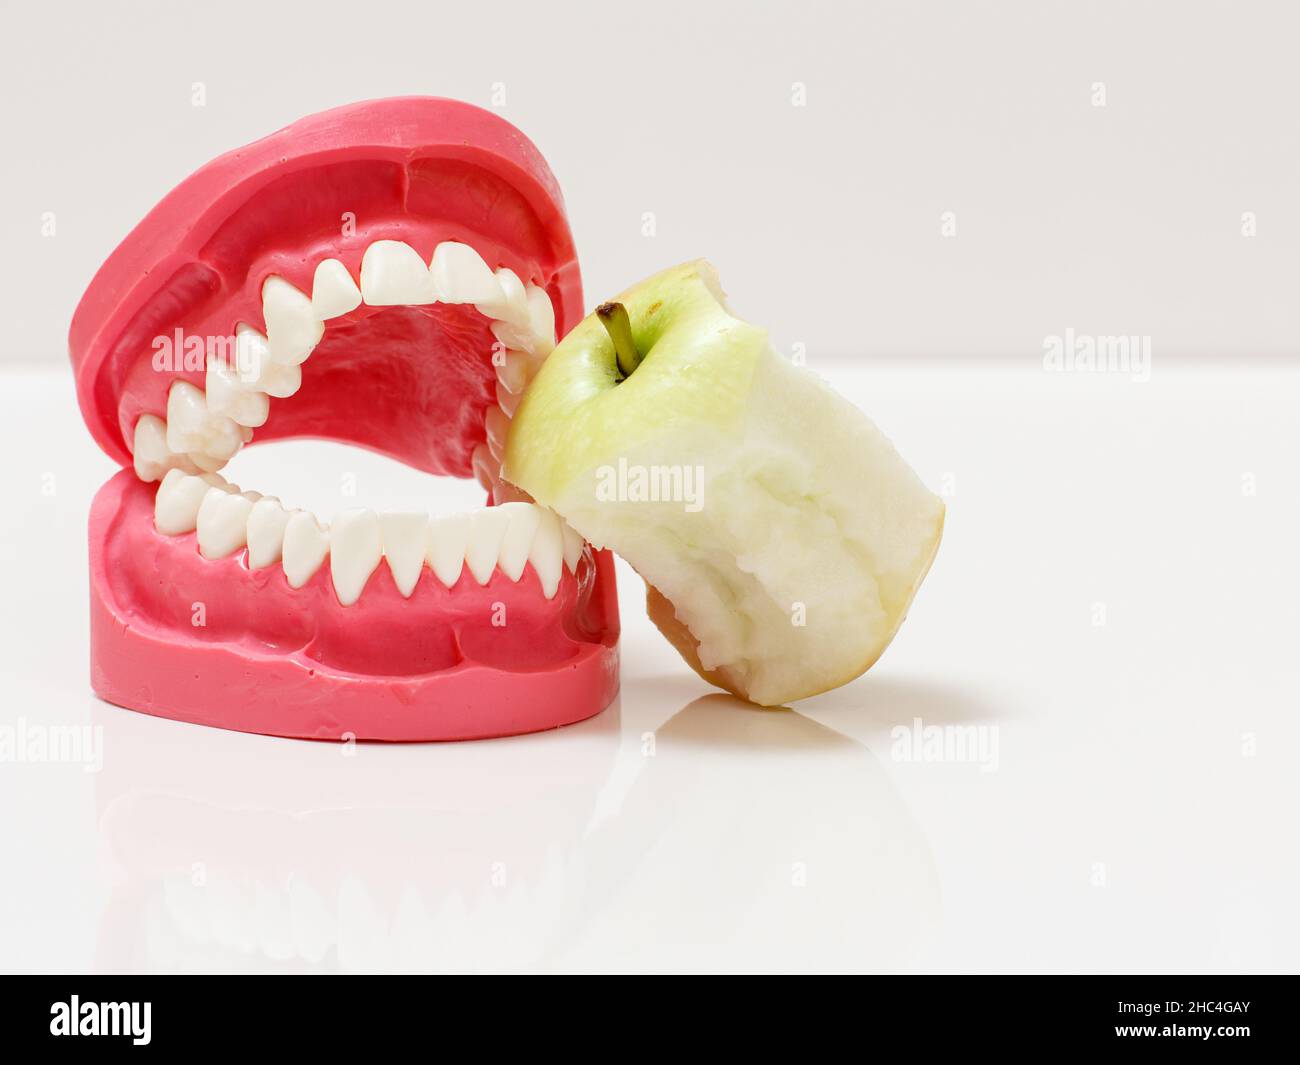 Disposizione della mandibola umana e del nucleo di mela accanto ad essa. Foto Stock